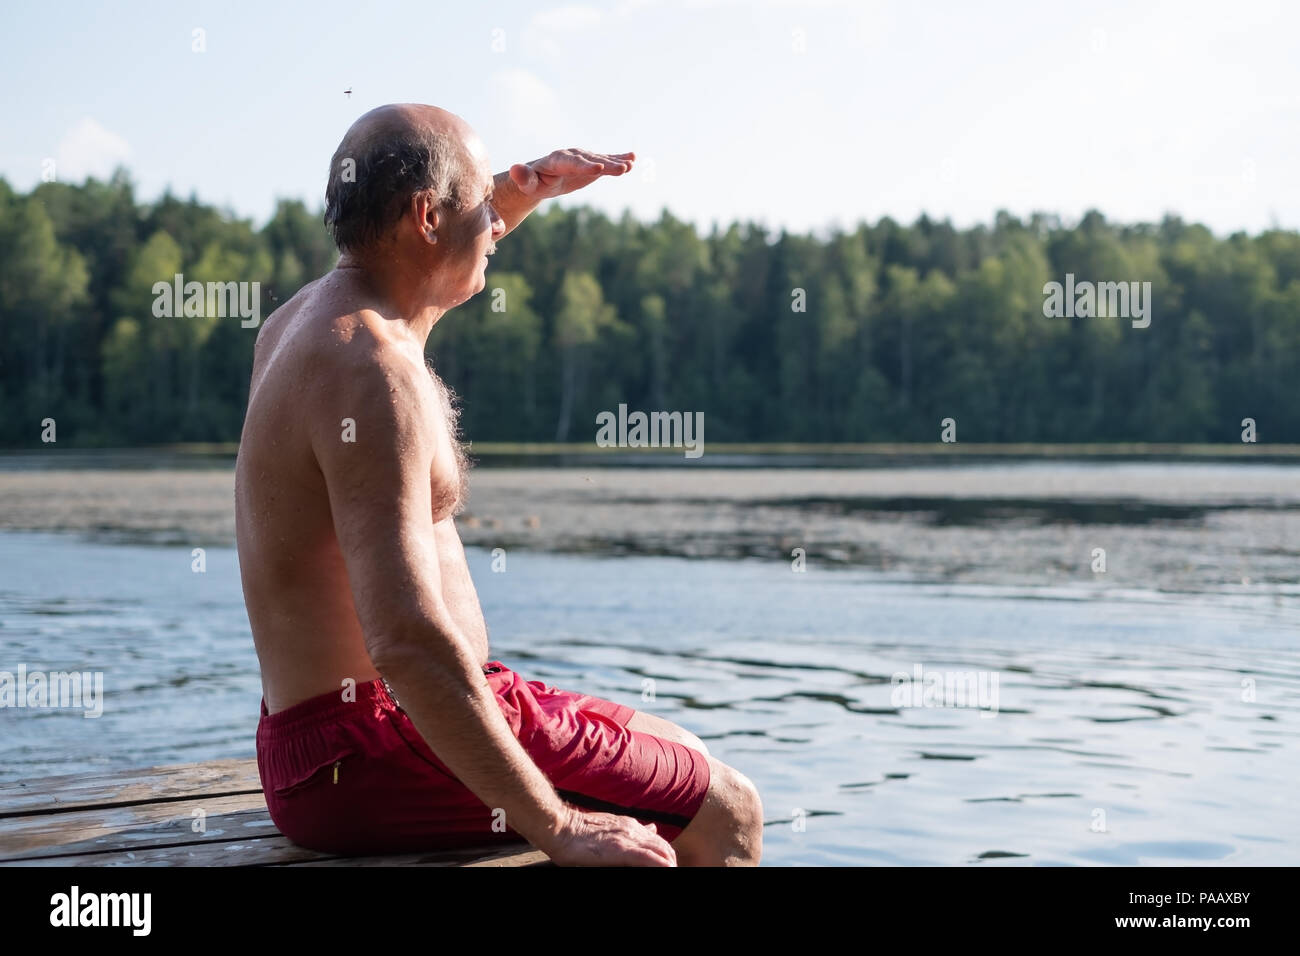 Bel uomo maturo seduta sulle sponde di un lago in una posizione soleggiata e tranquilla giornata, seduto su di un molo di legno appoggiata in villaggio Foto Stock